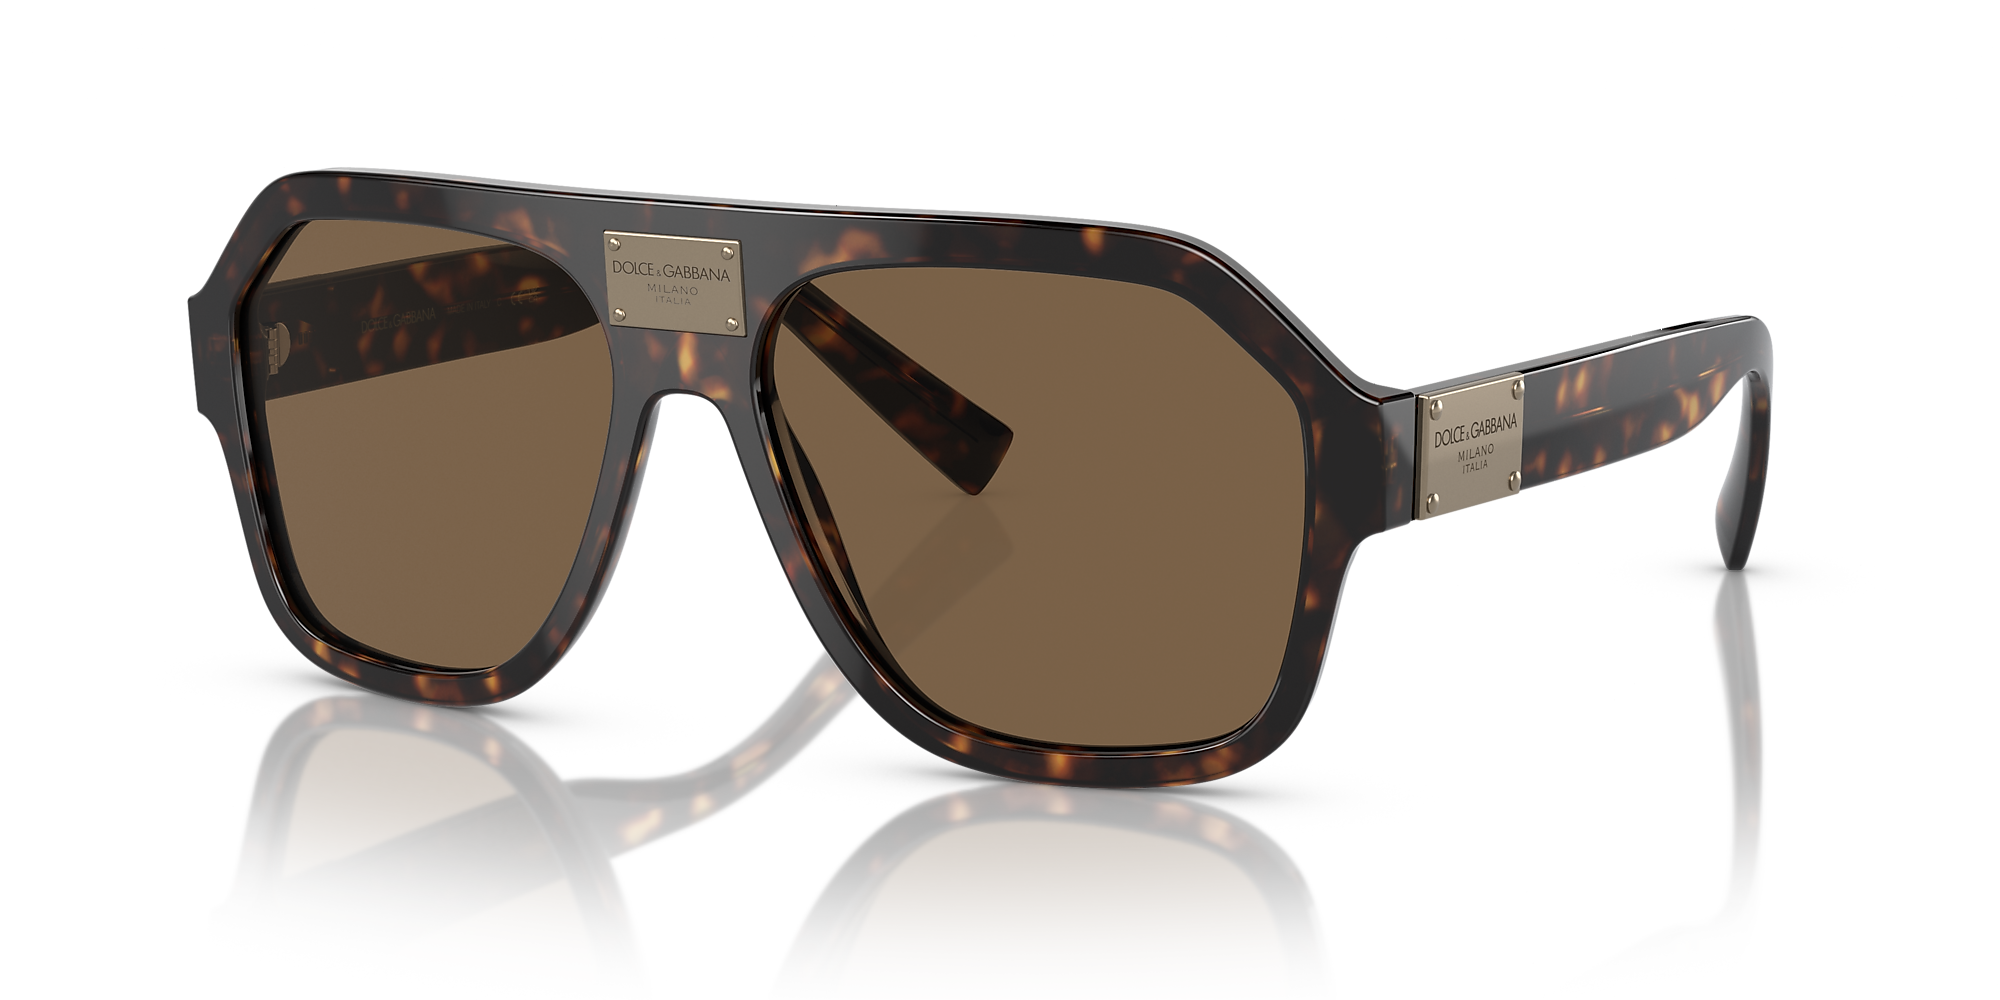 Dolce&Gabbana DG4433F 58 Dark Brown & Havana Sunglasses | Sunglass Hut USA